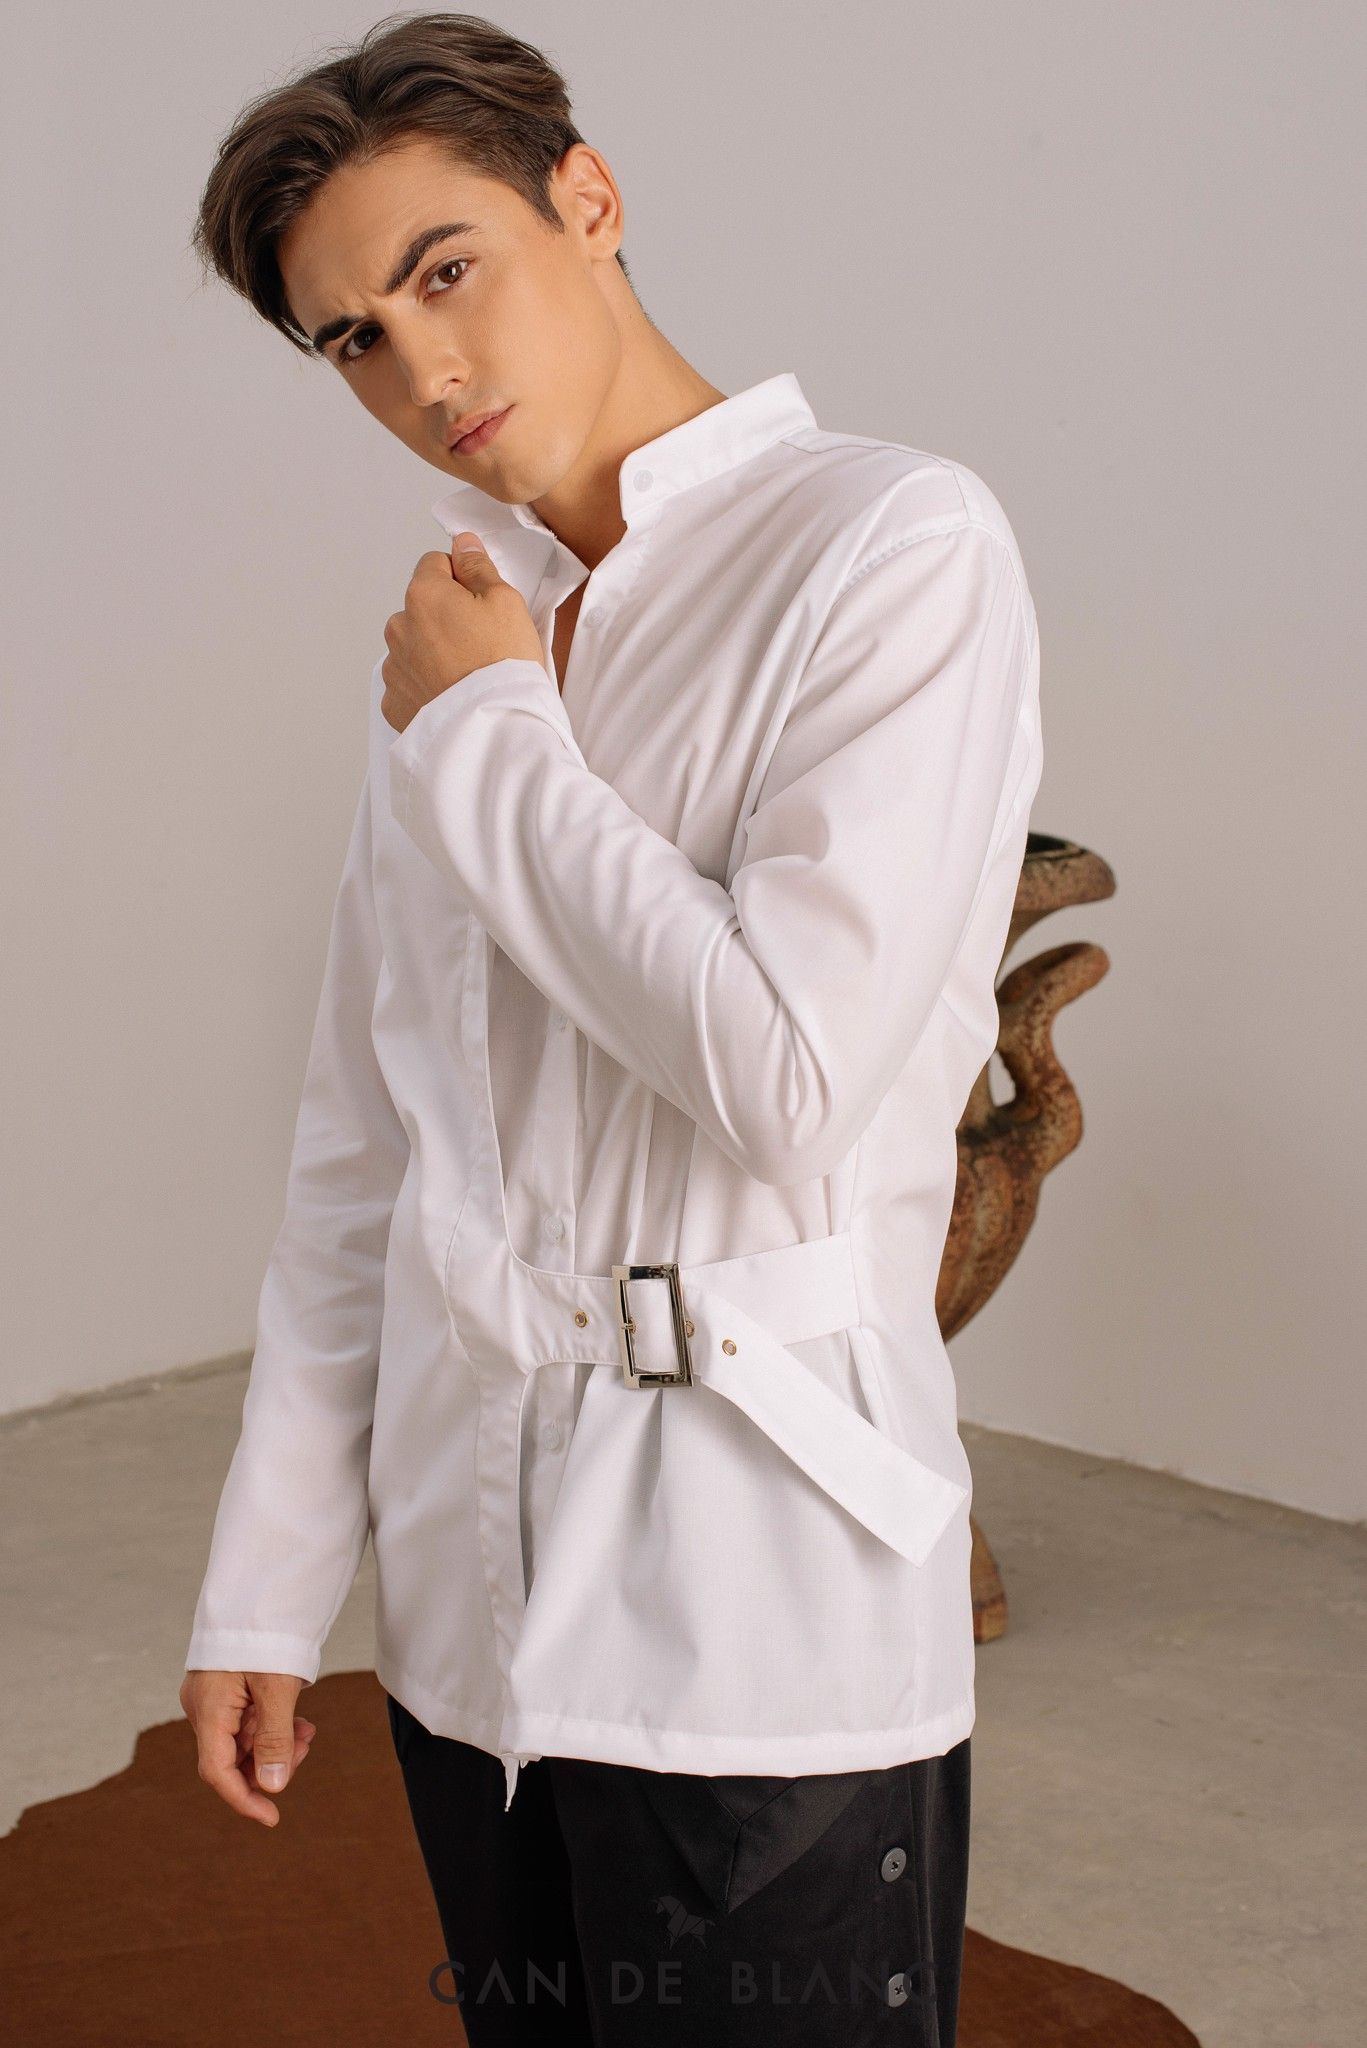 Collar White Shirt mix Belt